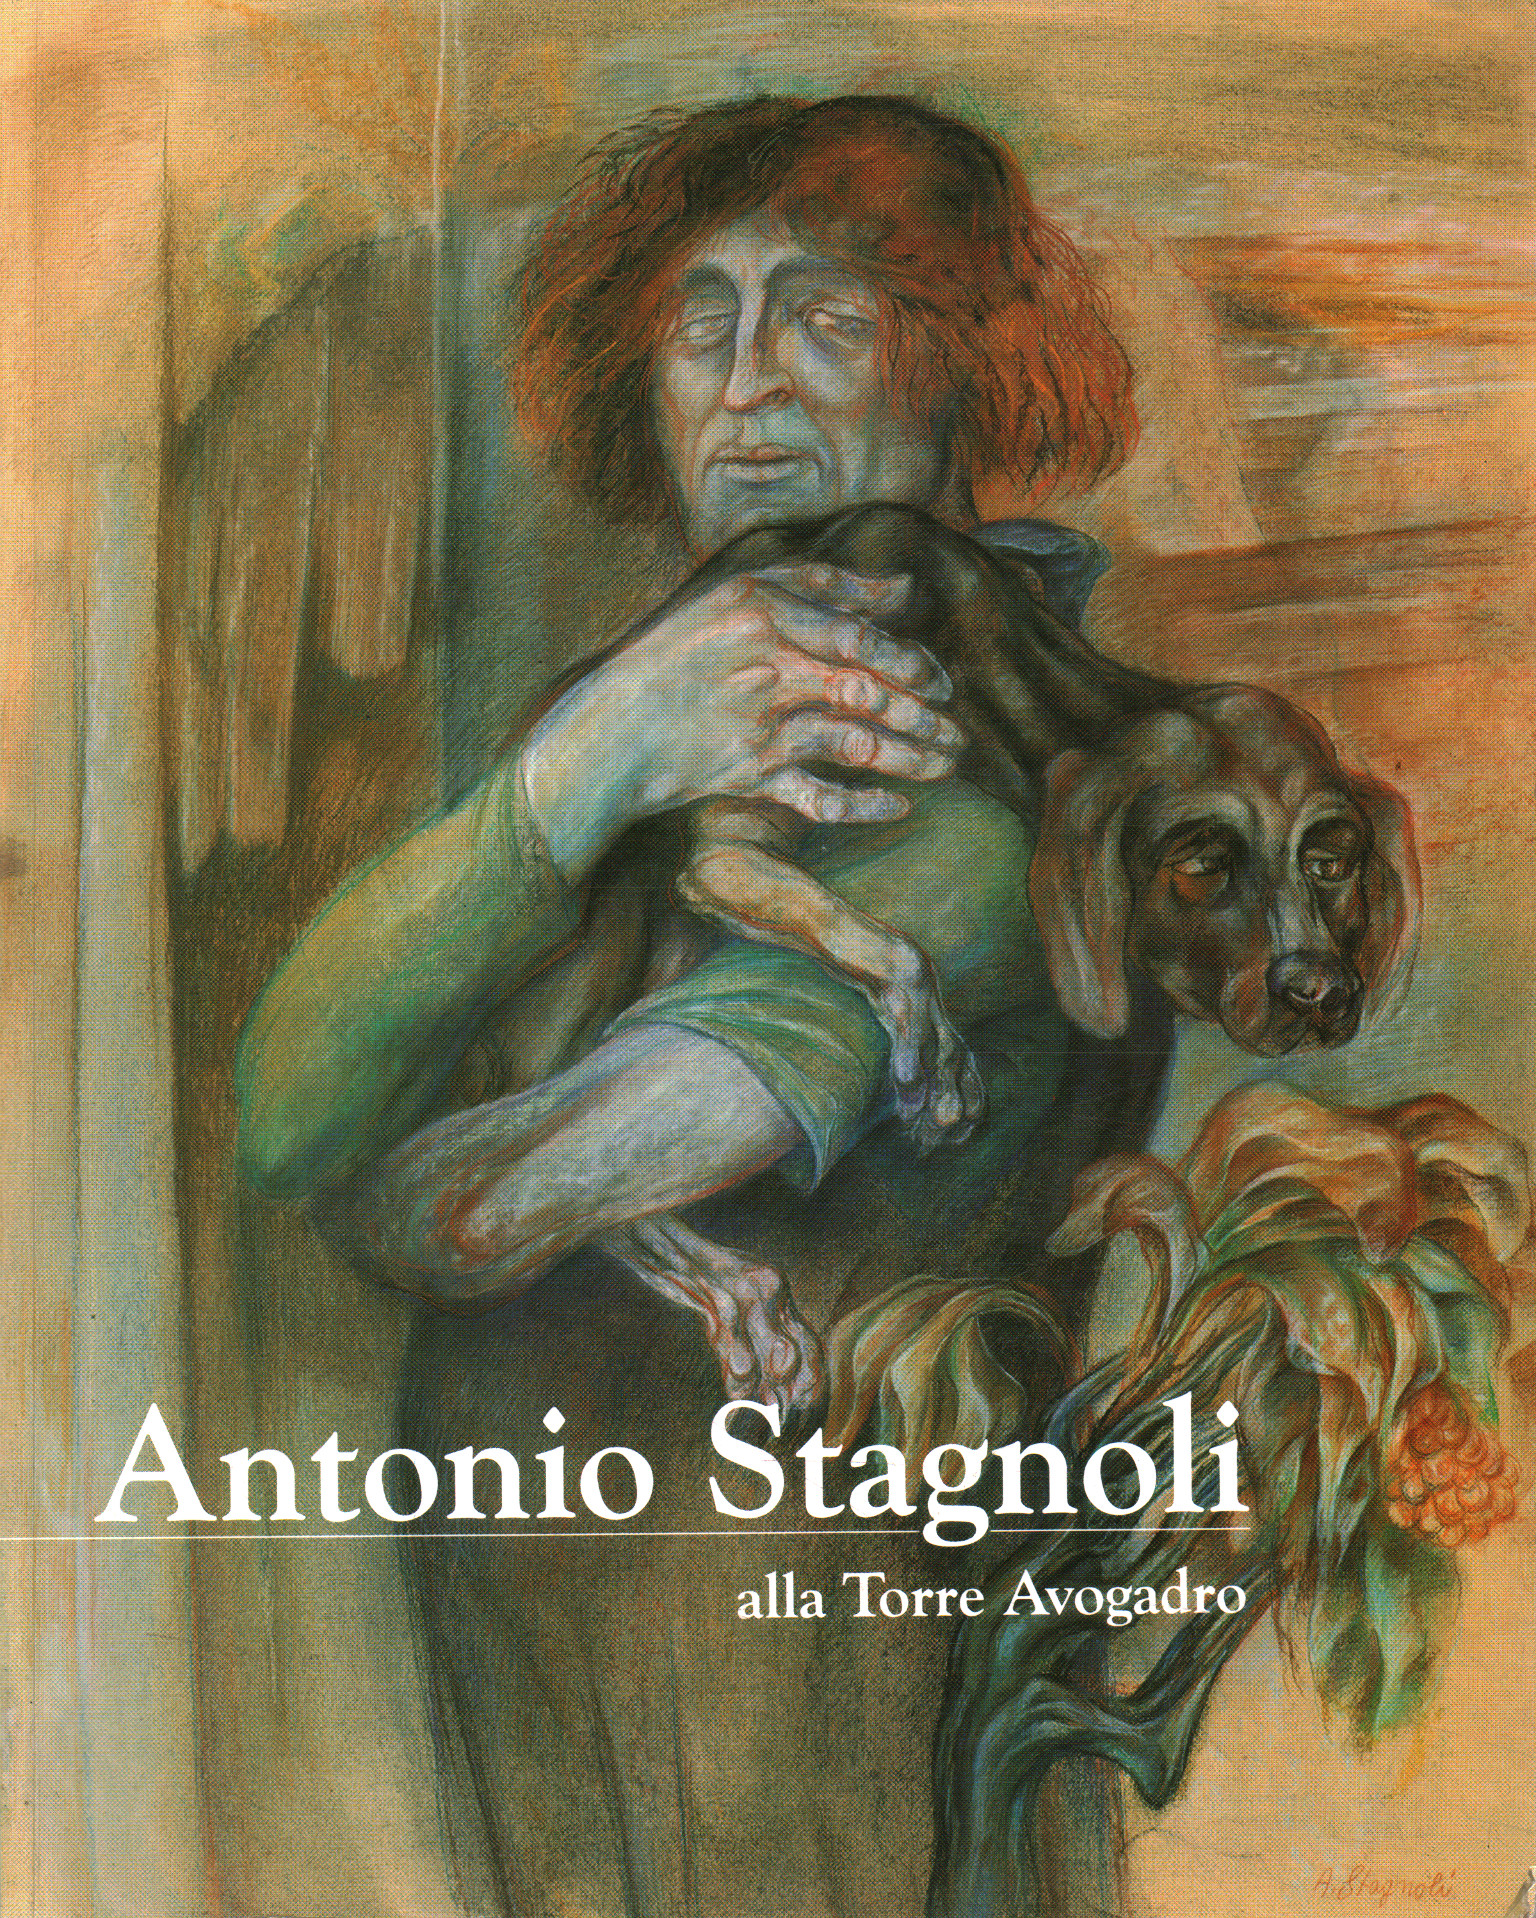 Antonio Stagnoli alla Torre Avogadro